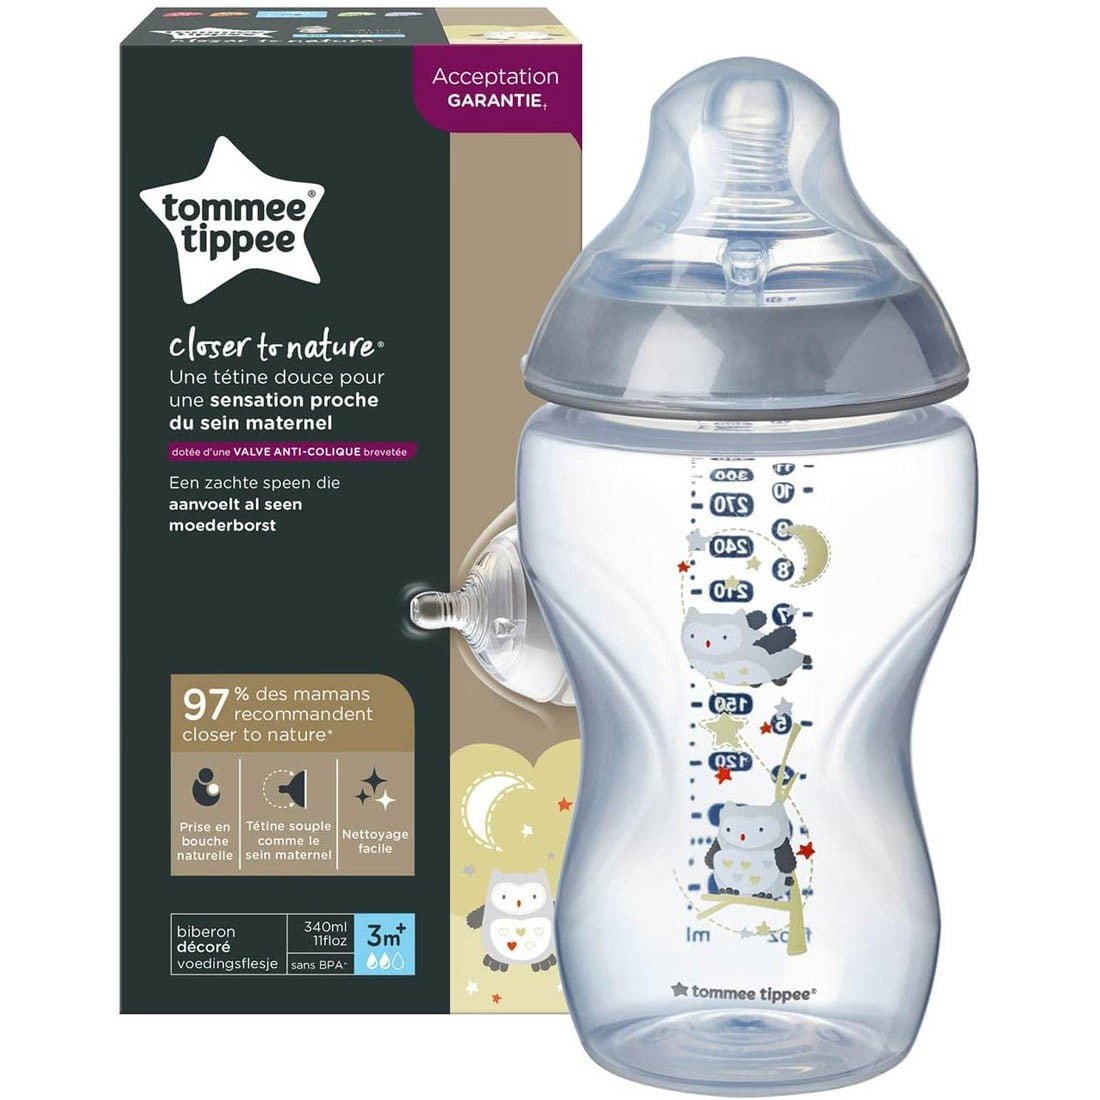 Les produits Tommee Tippee pour bébés - Achetez en ligne sur